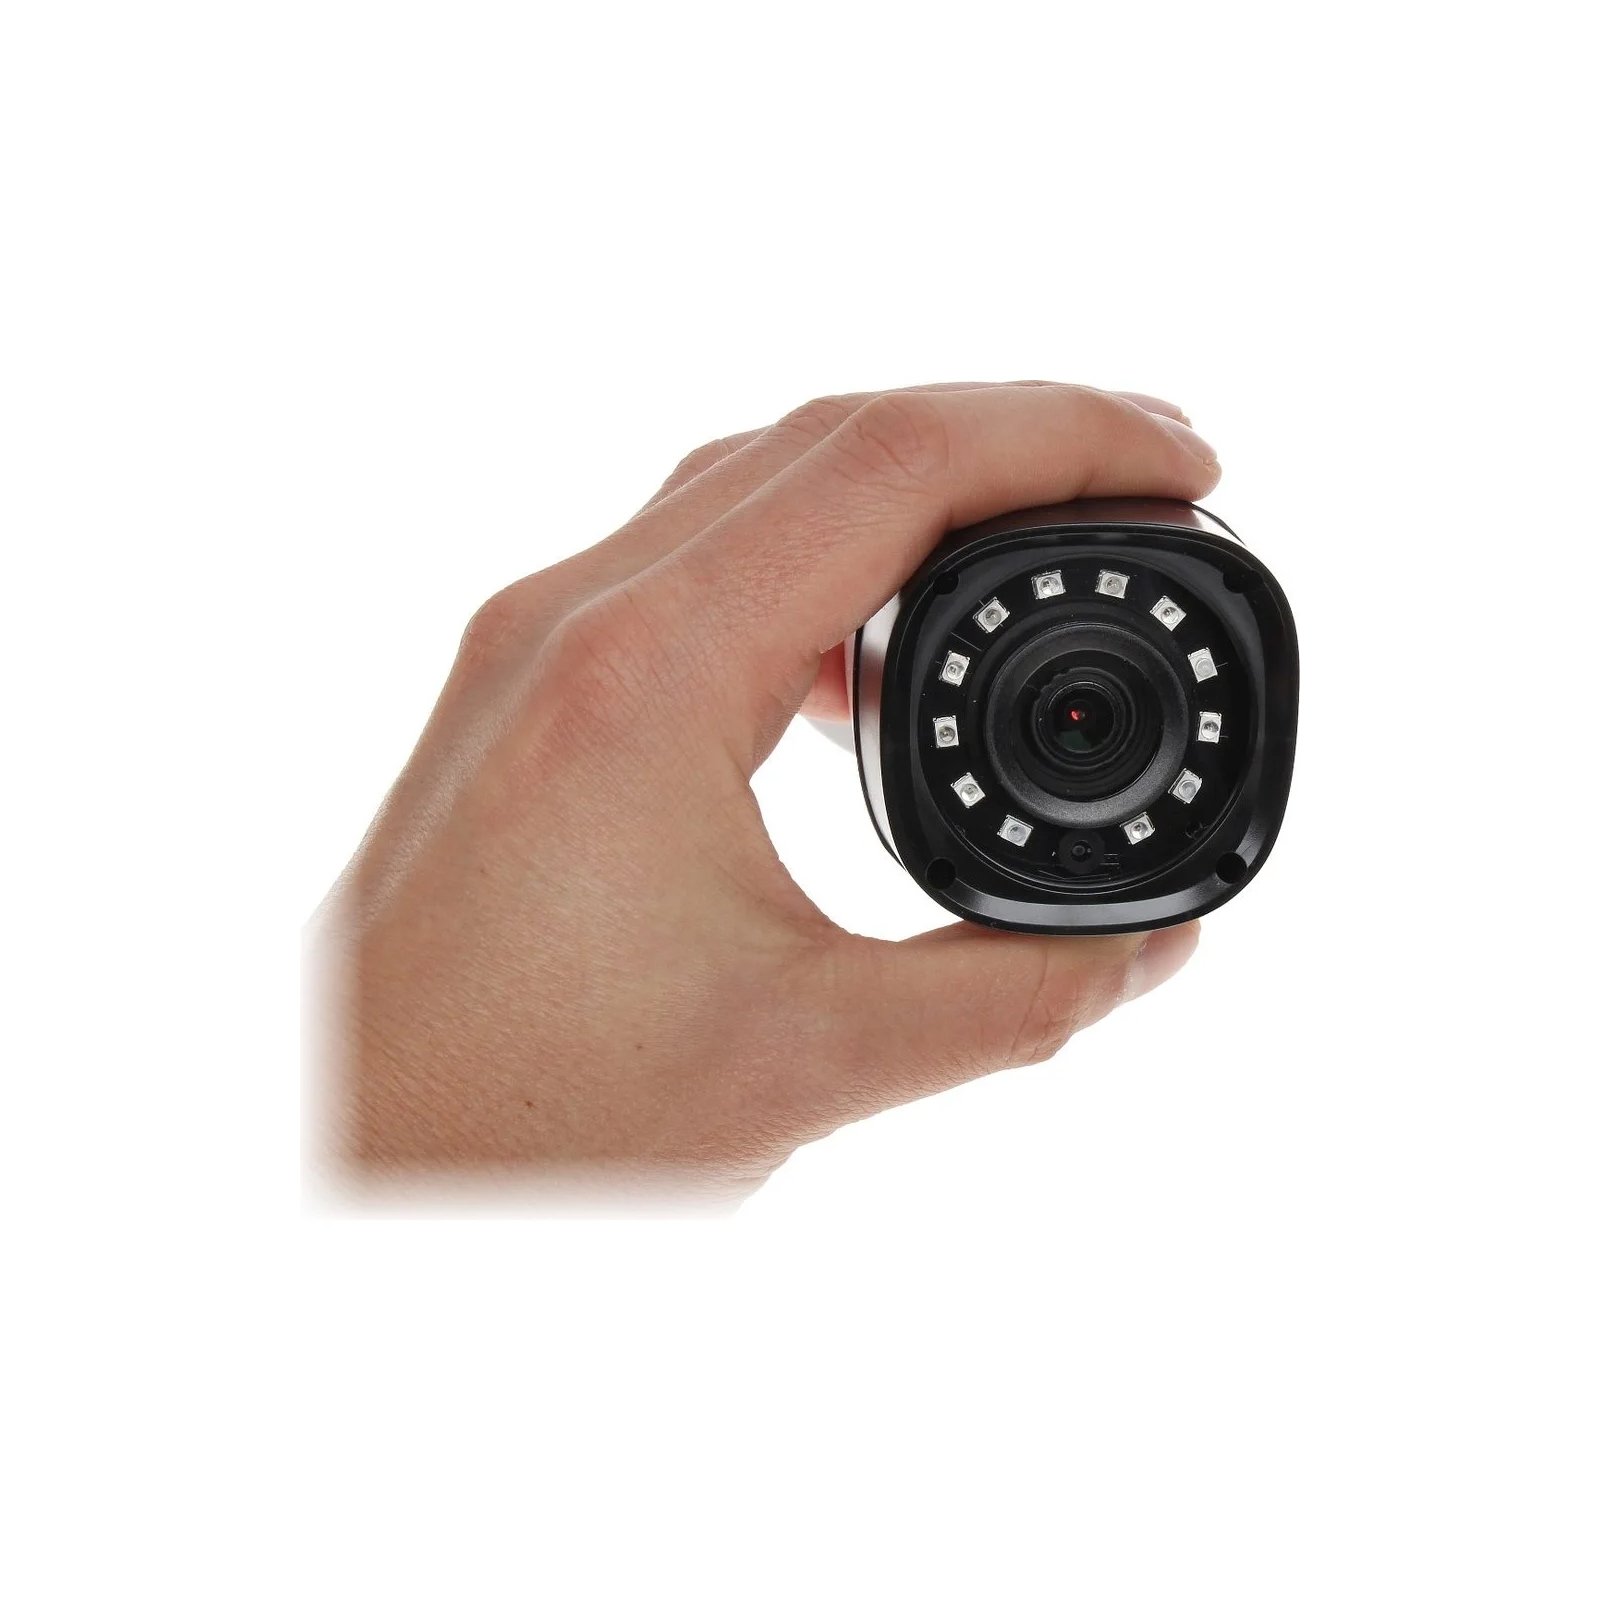 Камера видеонаблюдения Dahua DH-HAC-HFW1200RP (3.6) изображение 4